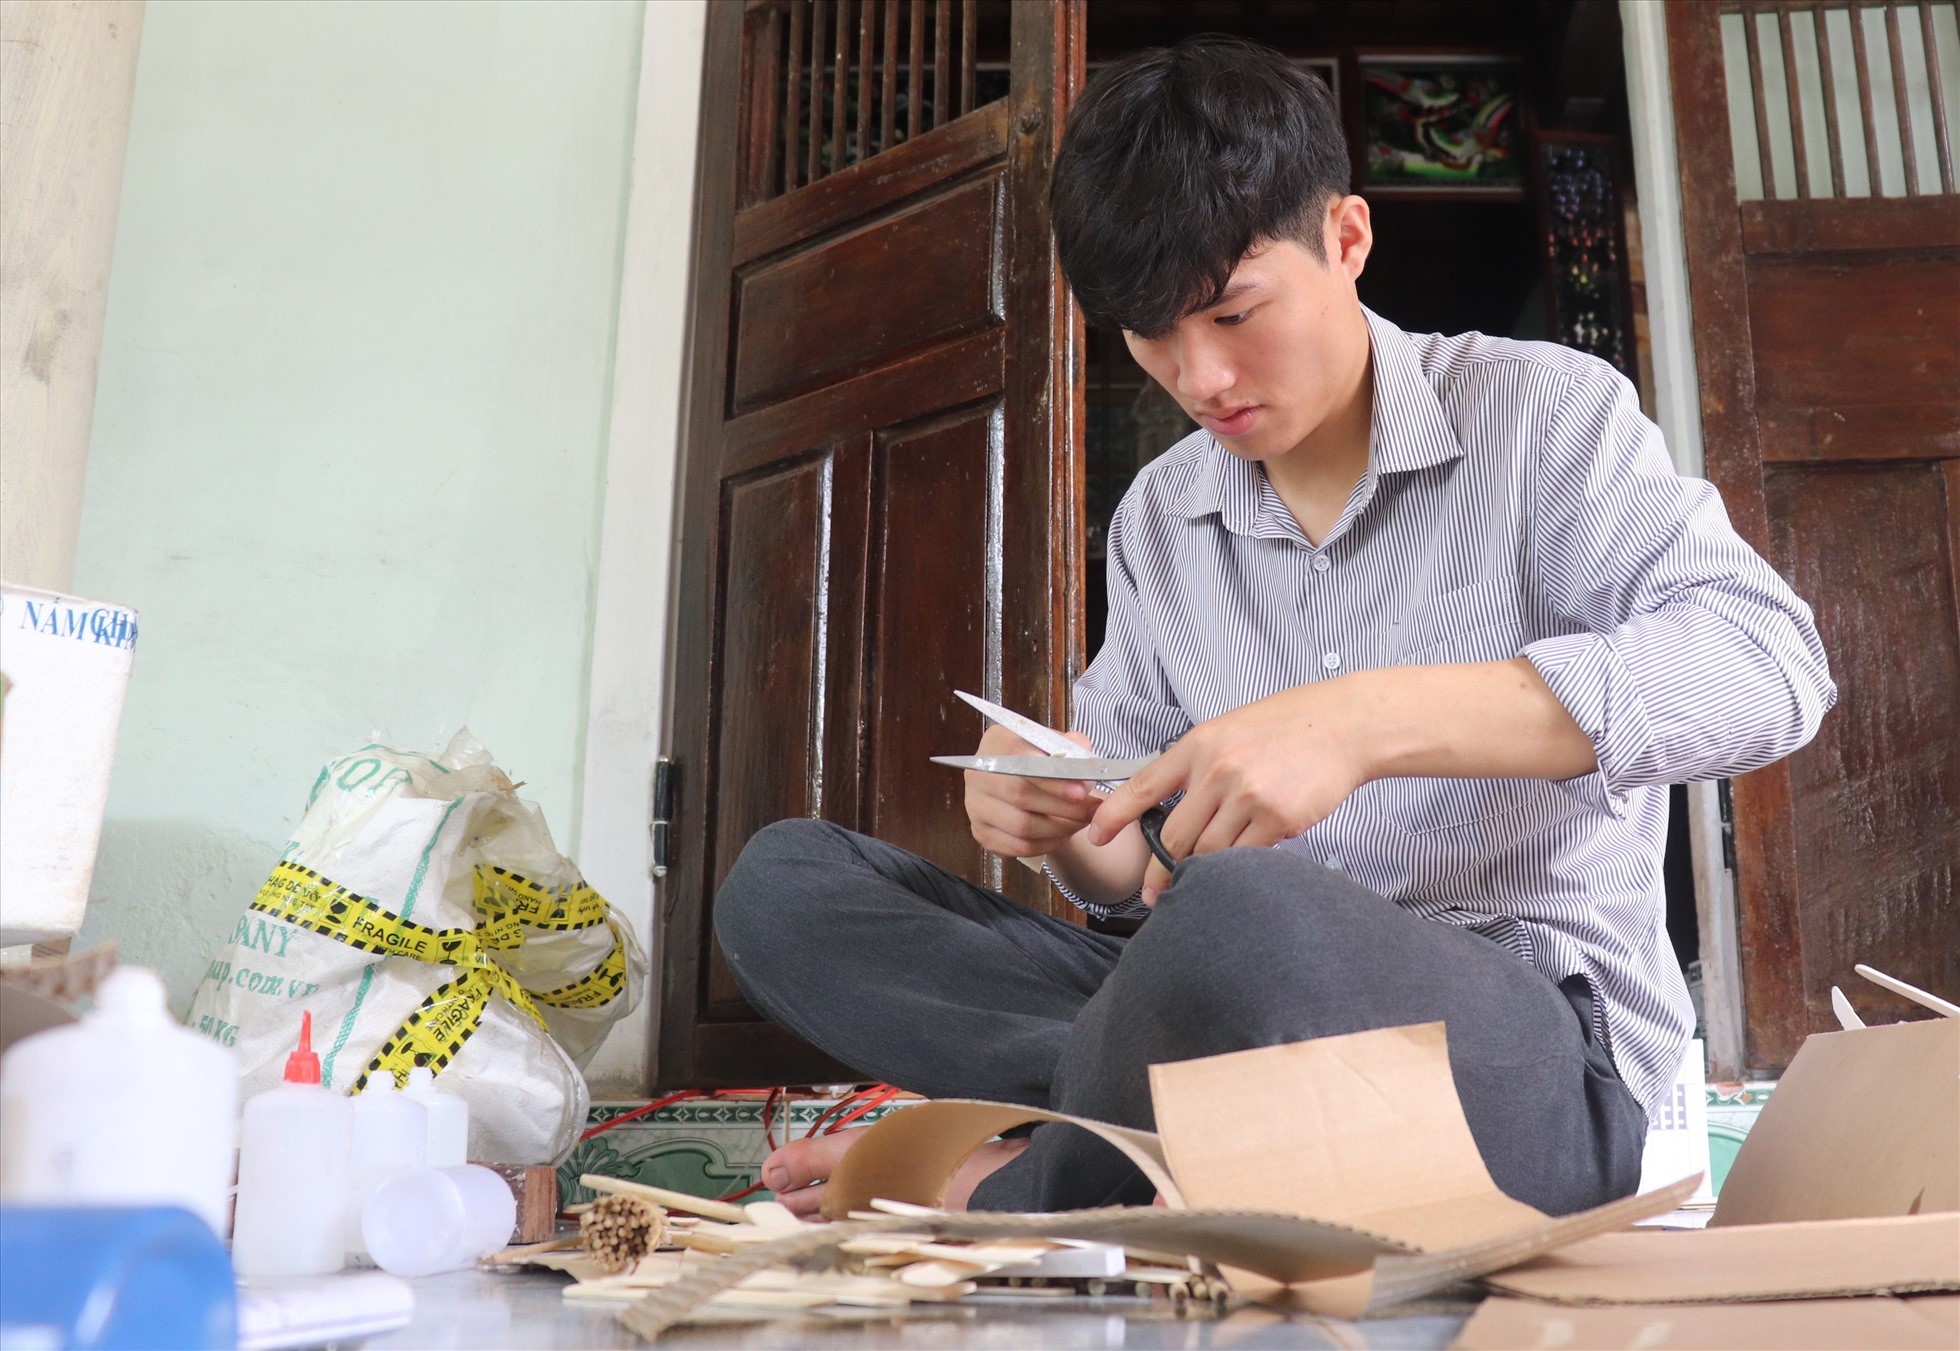 Năm 2021, khi đang học nghề ở ngoại tỉnh, thì dịch COVID-19 bùng phát, Hoàng Thanh Tùng (22 tuổi, trú thị trấn Gio Linh, huyện Gio Linh, tỉnh Quảng Trị) trở về quê. Vốn đam mê các nhà mô hình, nên tranh thủ thời gian rỗi, Tùng tận dụng các vật liệu có sẵn để thử làm nhà mô hình.